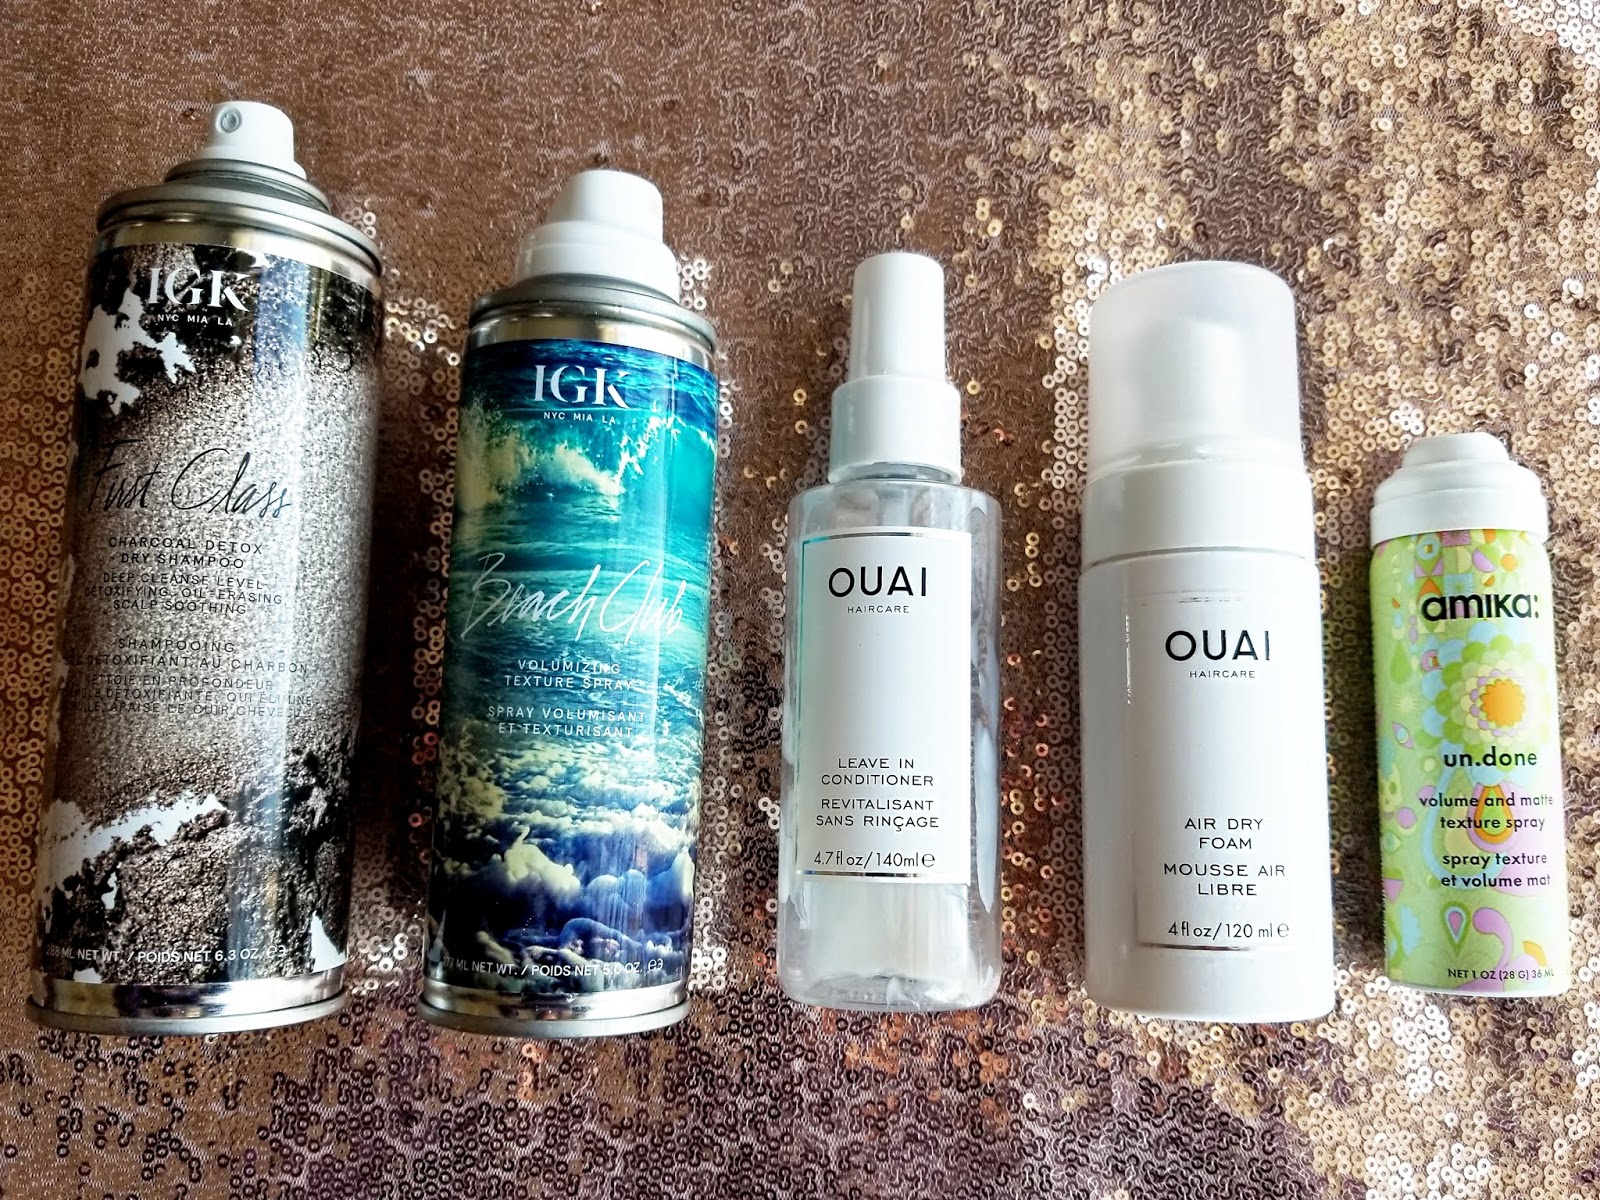 Igk Beach Club Texture Spray | 5 oz